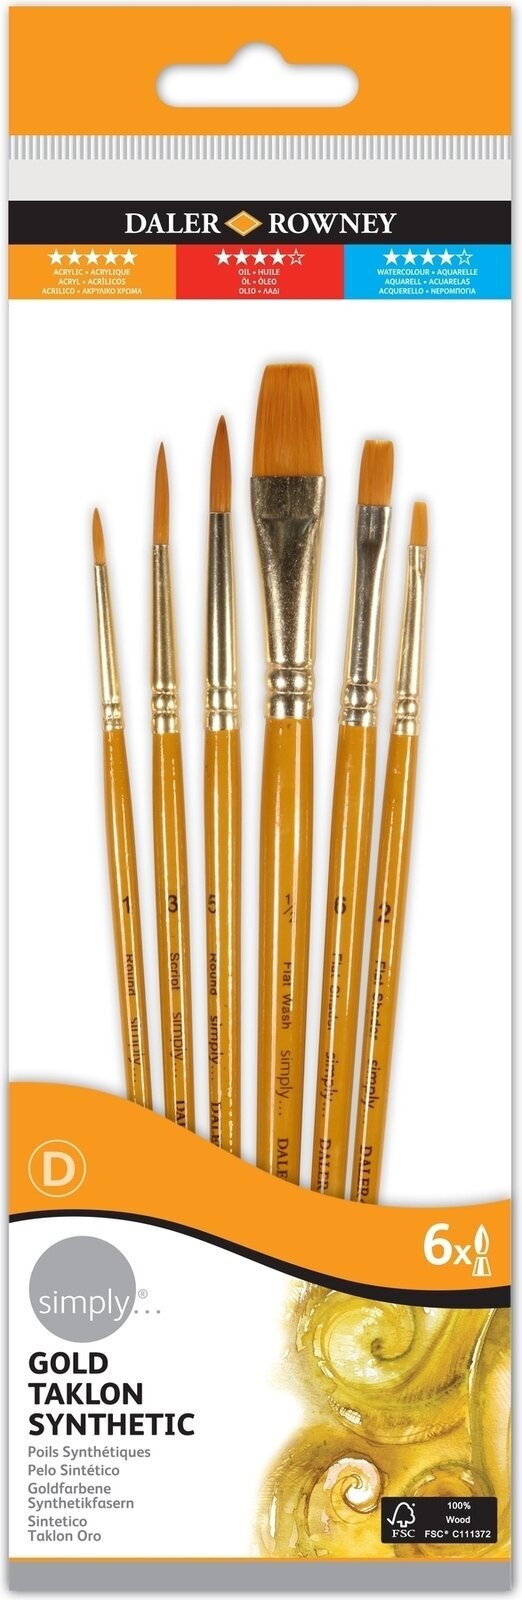 Cepillo de pintura Daler Rowney Simply Acrylic Brush Gold Taklon Synthetic Juego de pinceles 1 pc